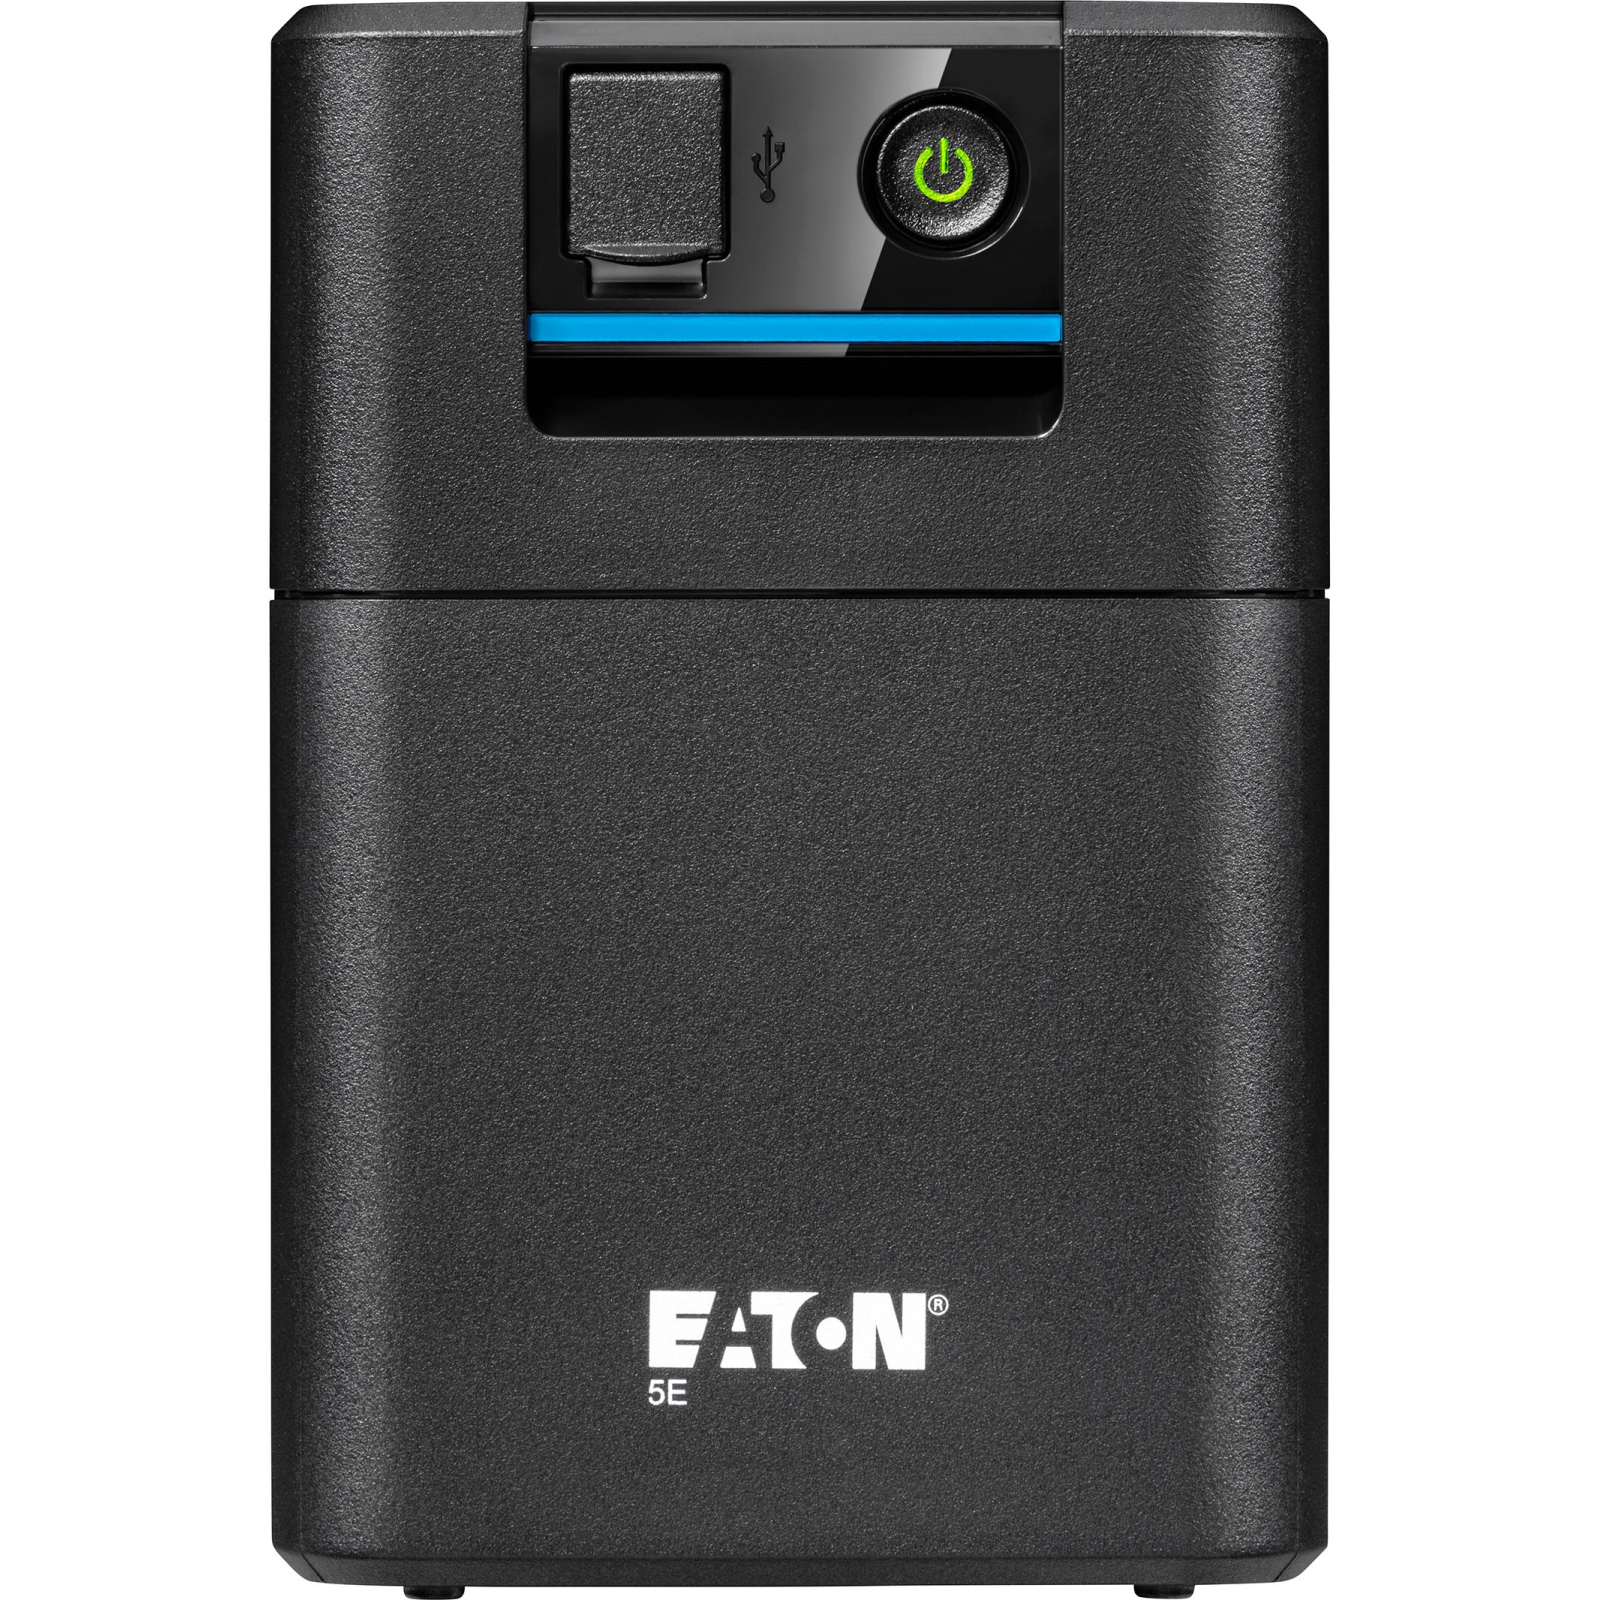 Источник бесперебойного питания Eaton 5E900UI, USB (5E900UI) изображение 2